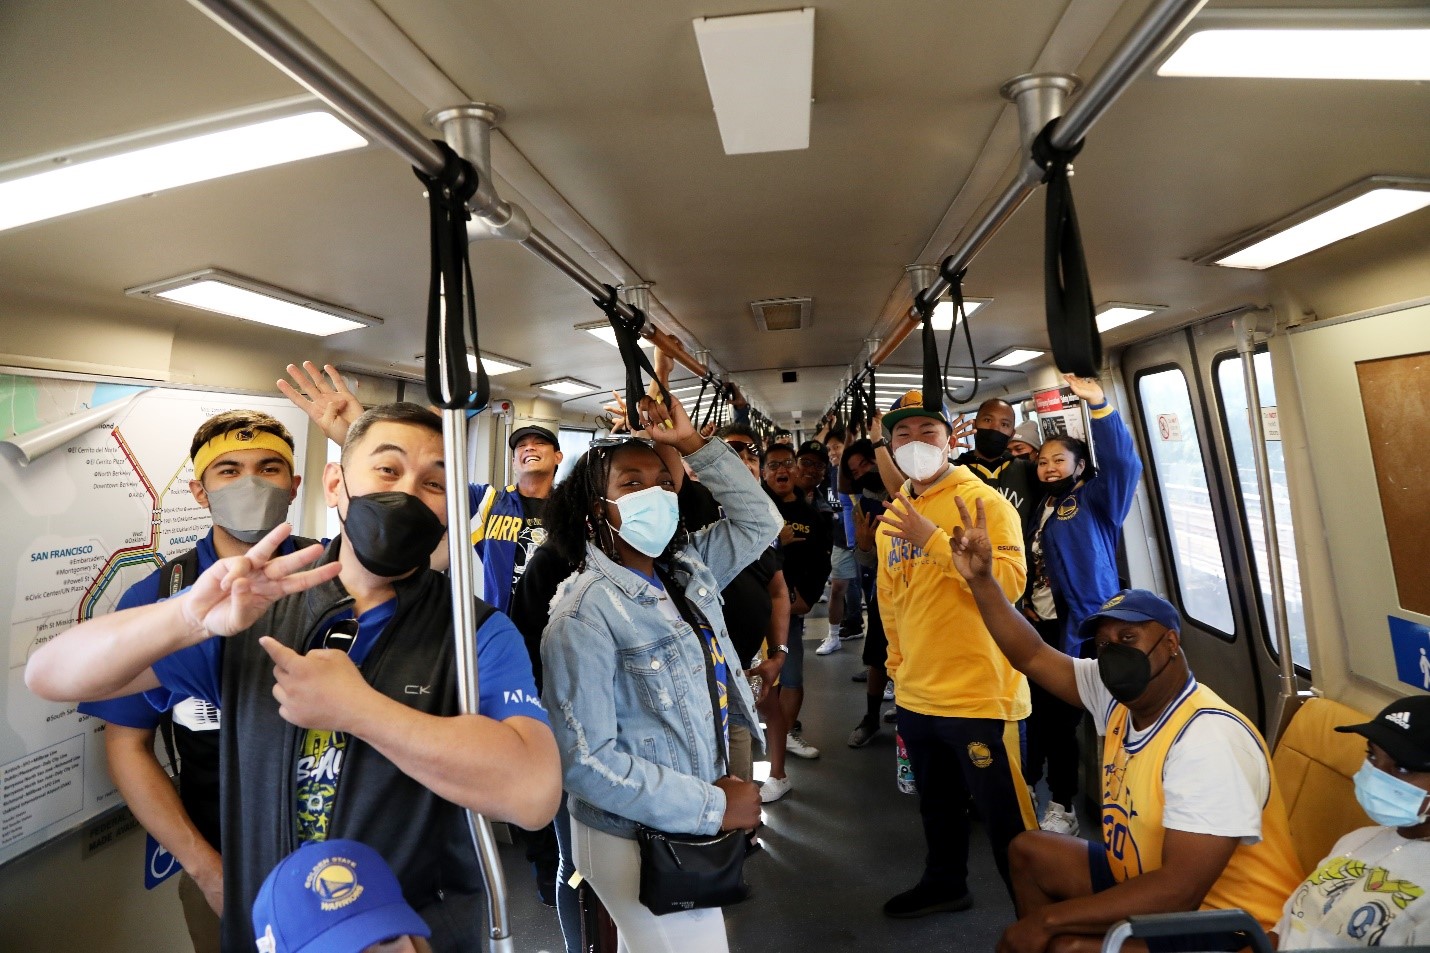 Warriors fan on board a train